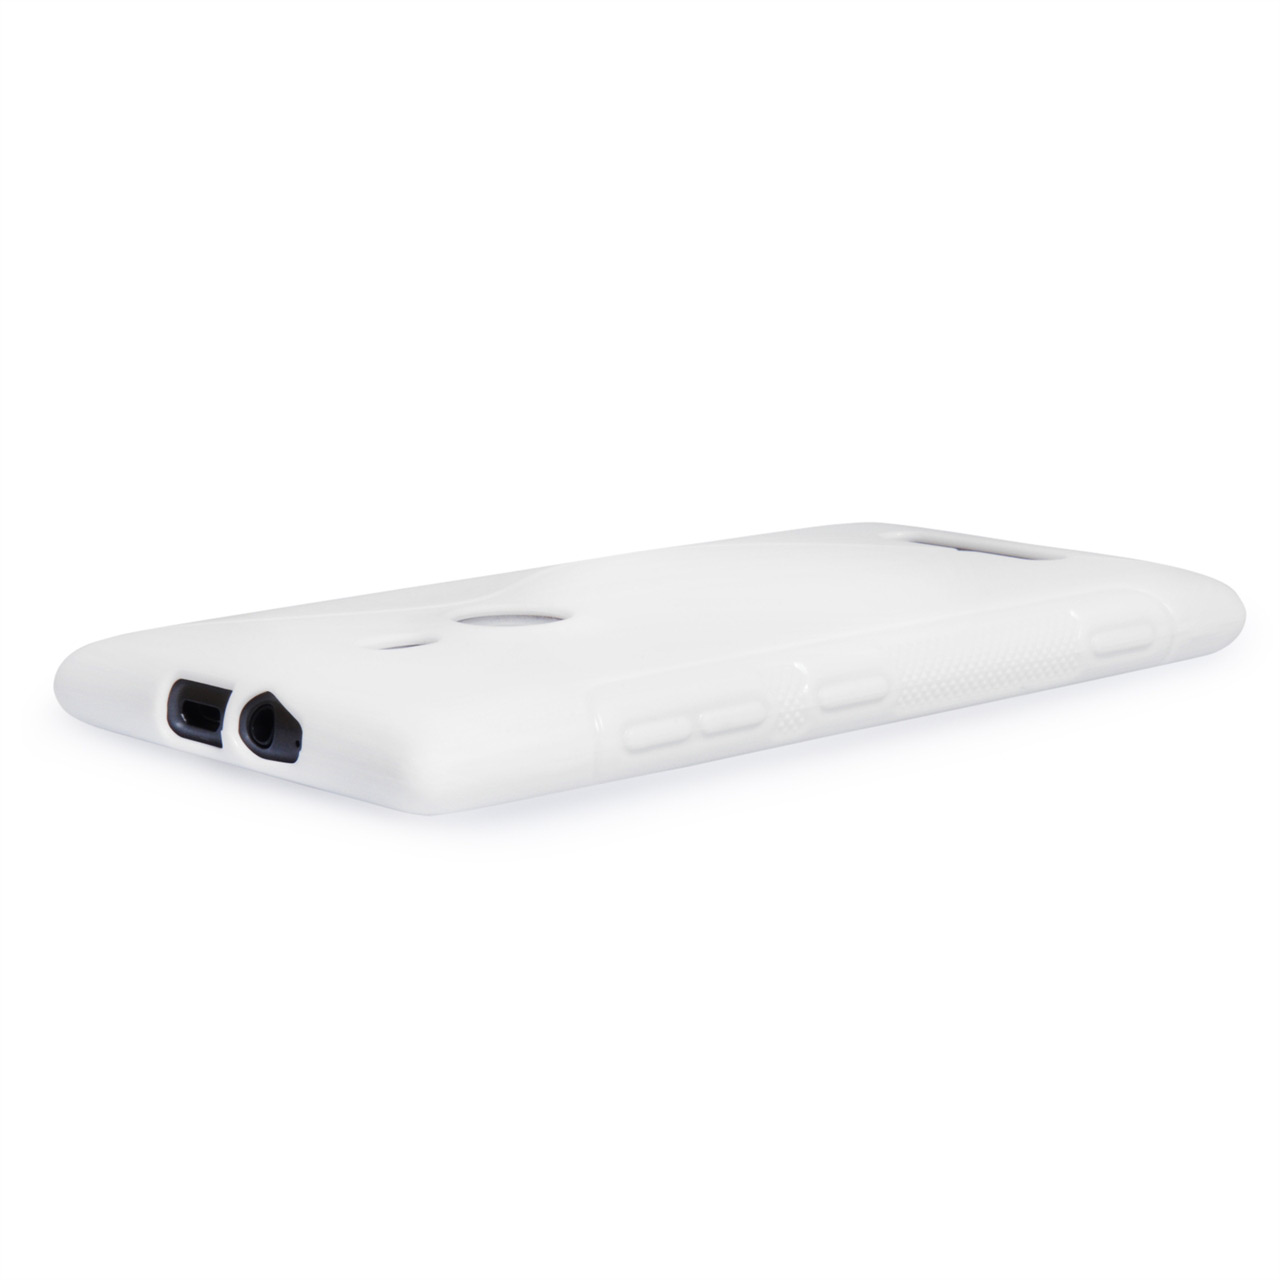 Caseflex Nokia Lumia 925 S-Line Gel Case - White